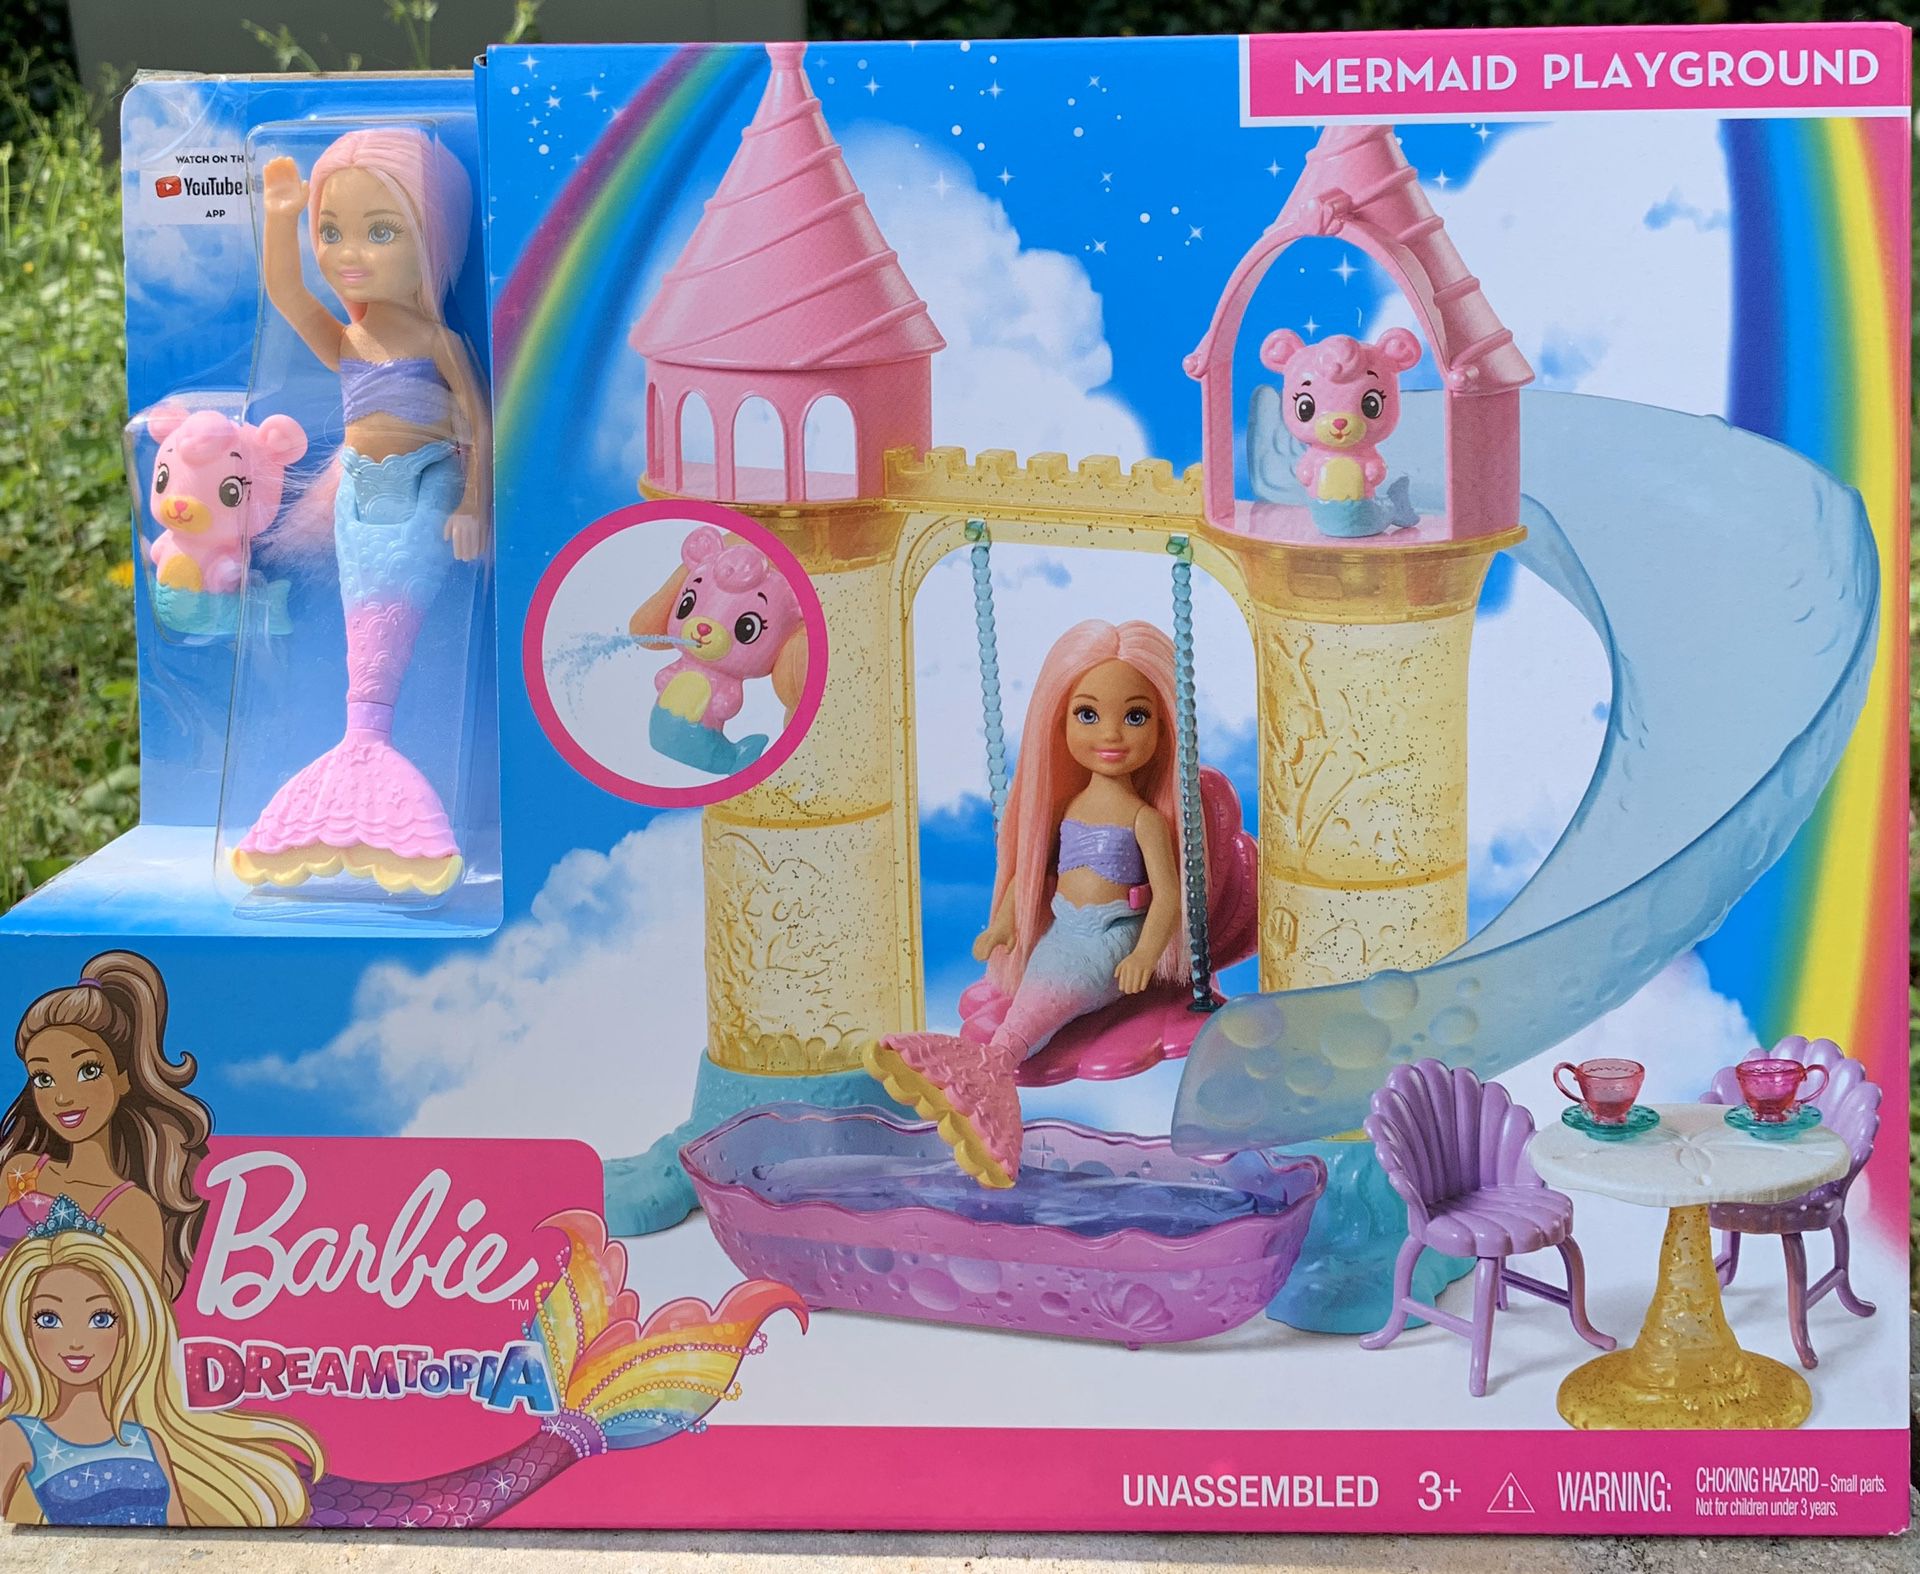 Barbie Dreamtopia Mermaid Playground Playset, with Chelsea Mermaid Doll, Merbear Friend Figure